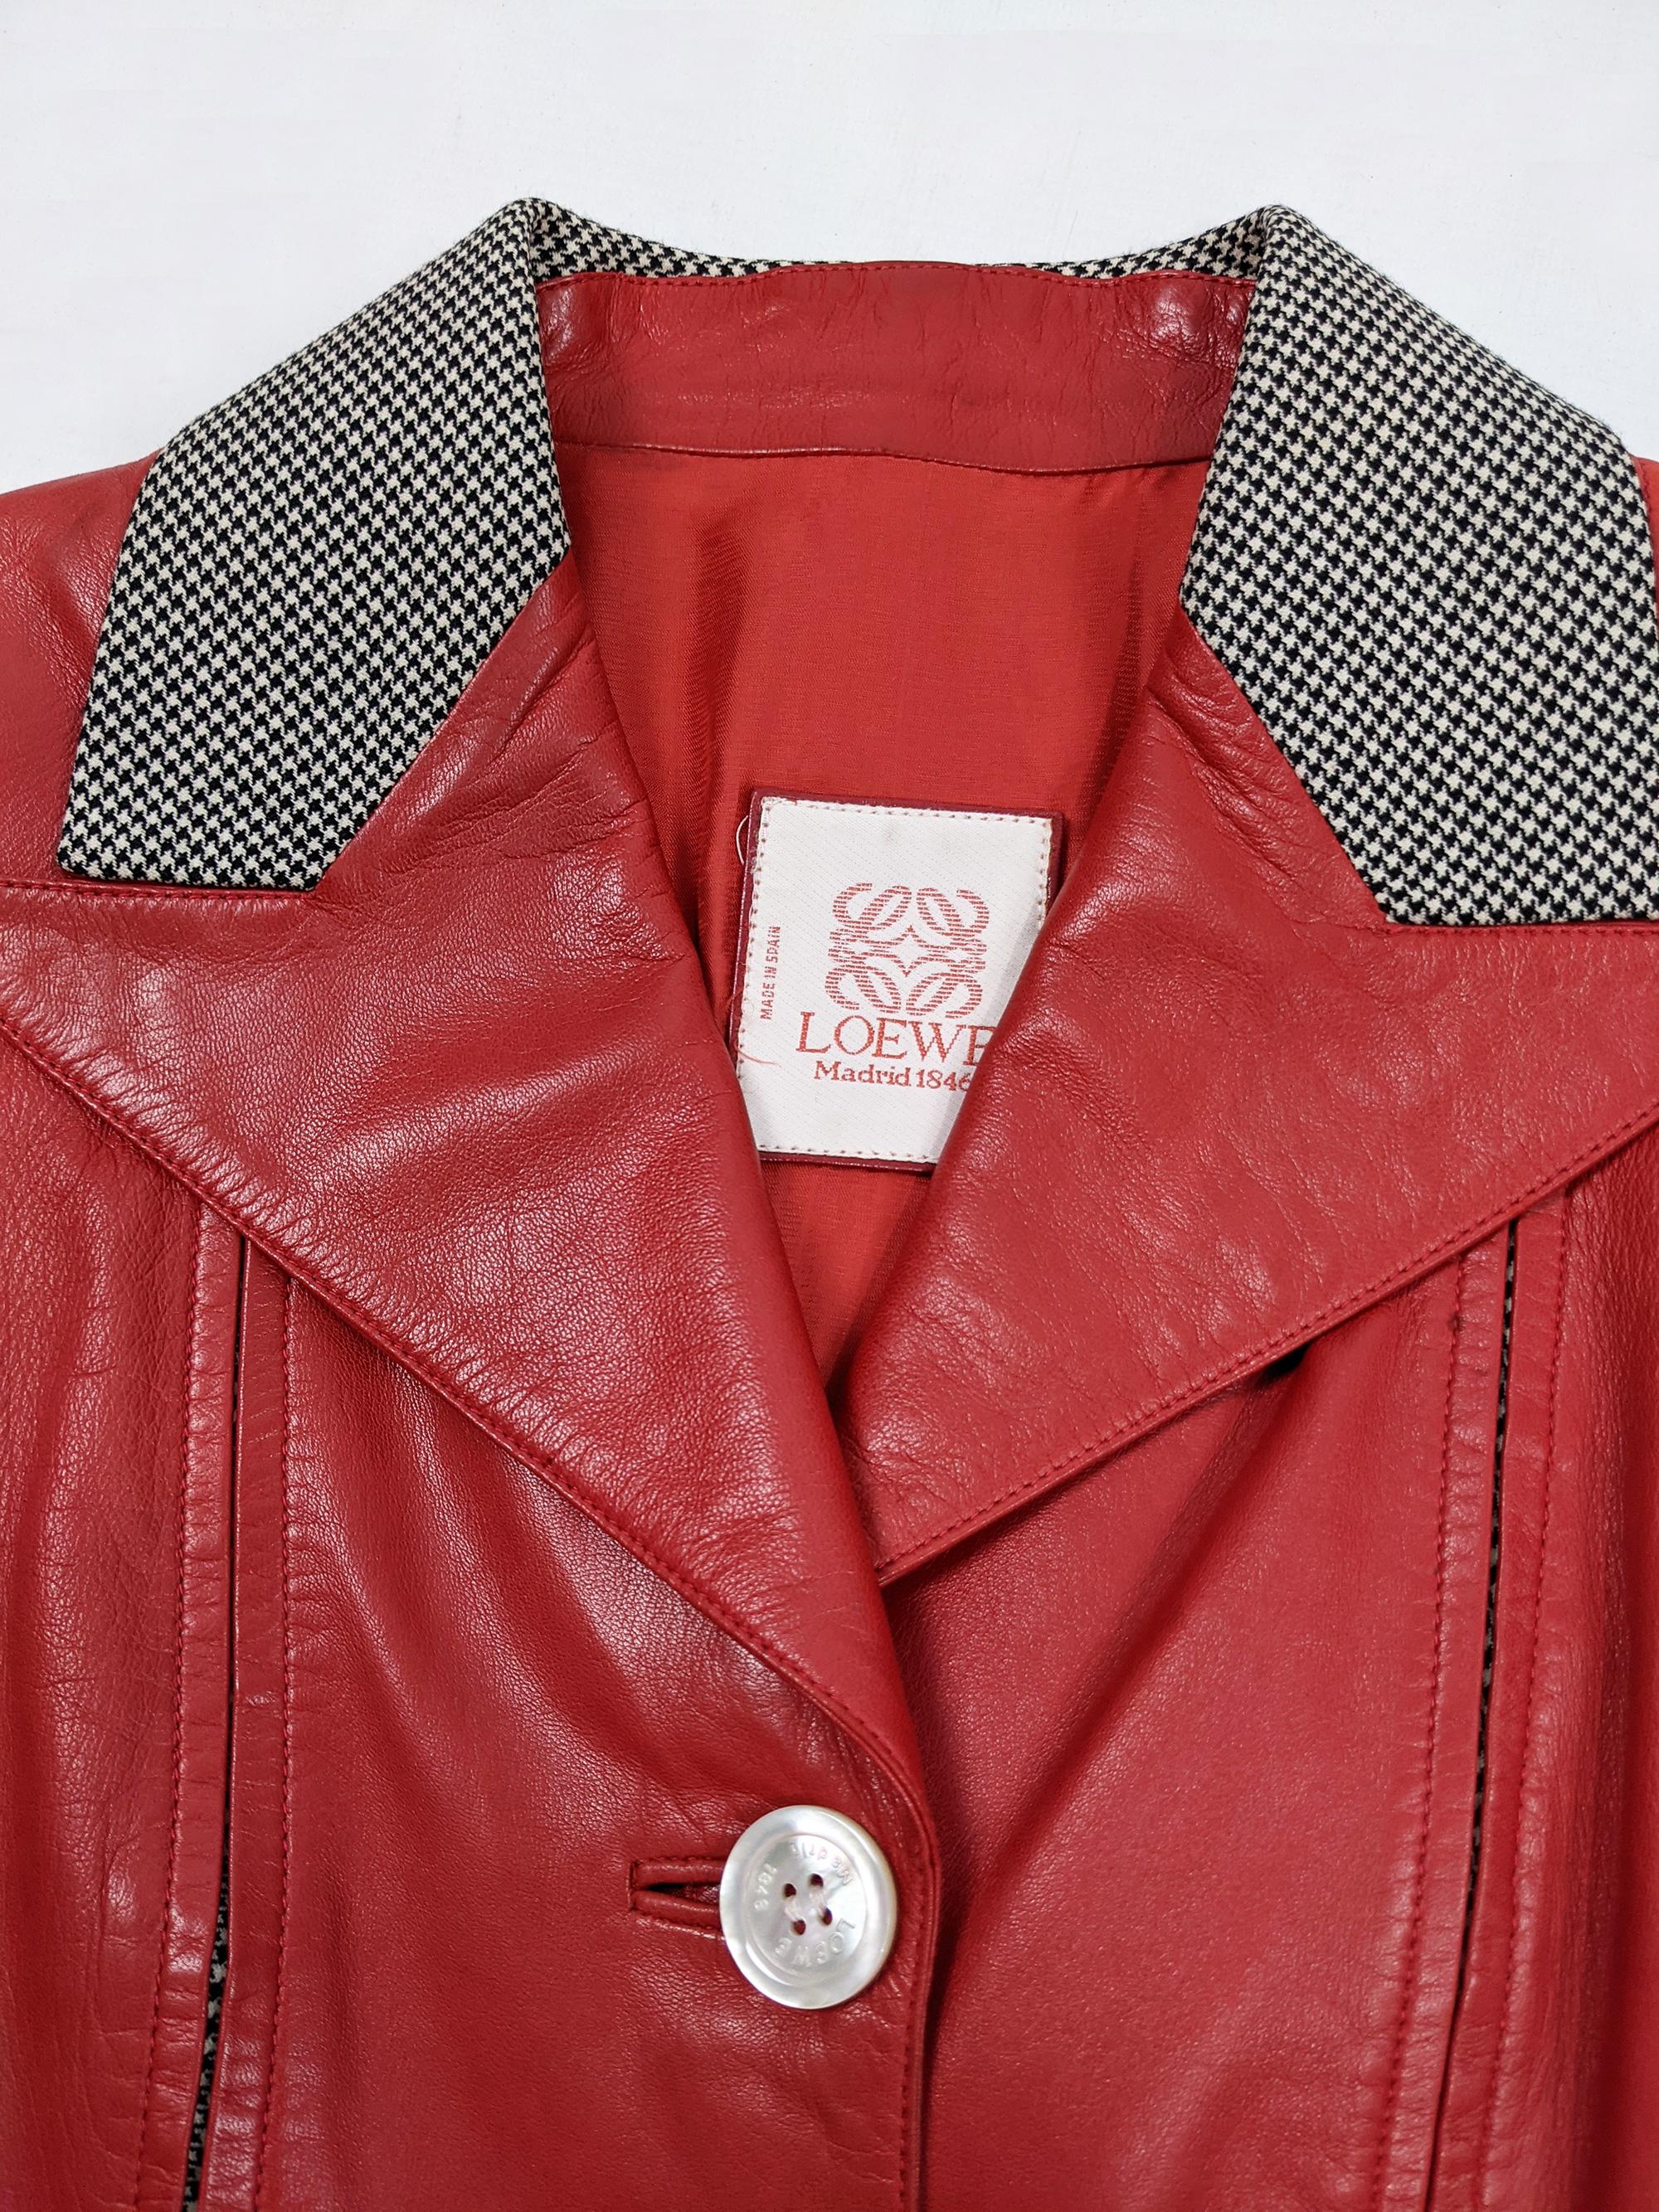 Loewe Vintage Red Leather Womens Jacket 1